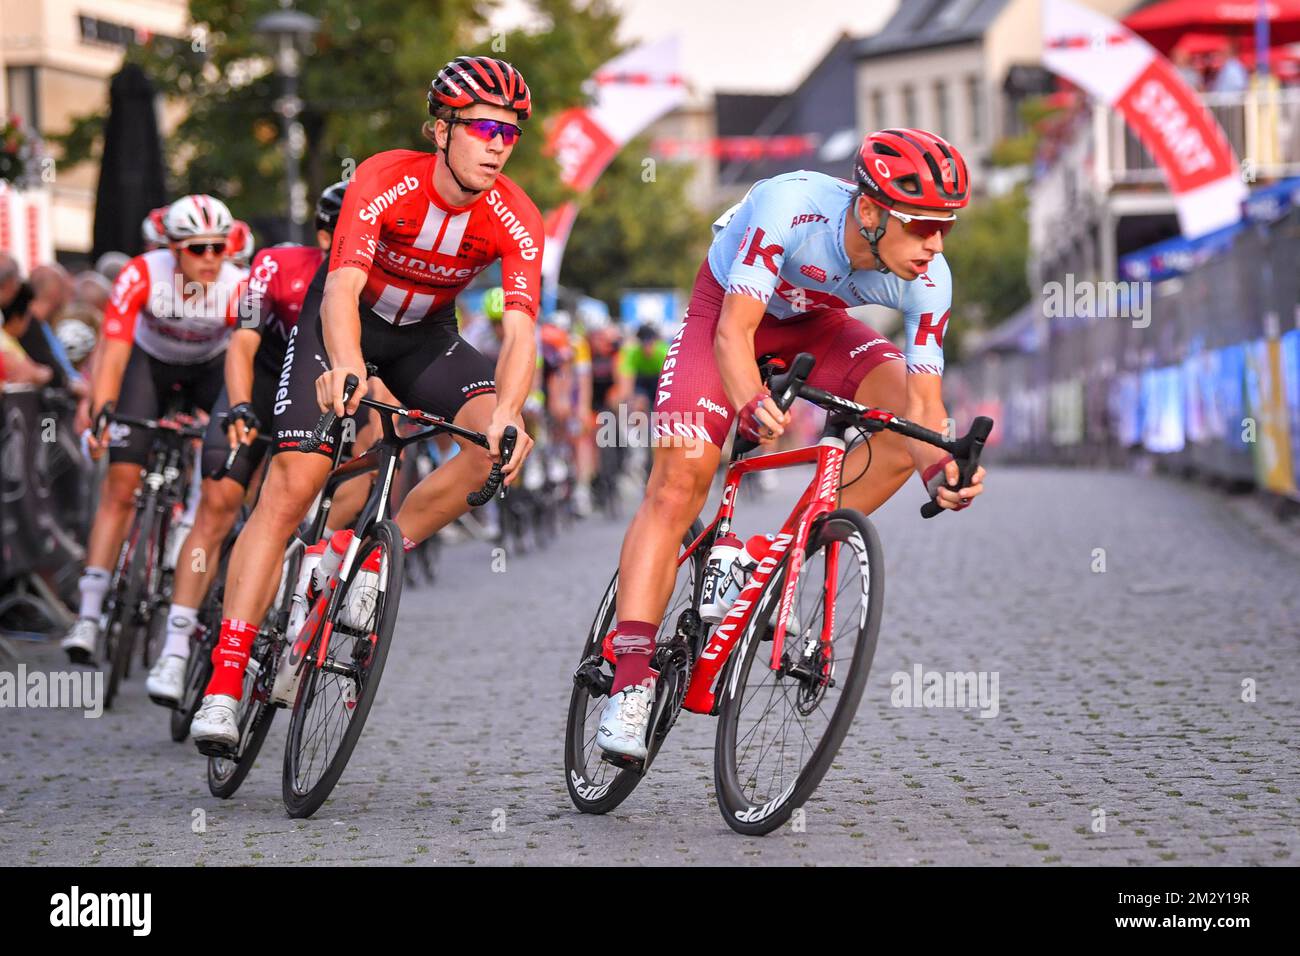 El jente belga Biermans de Katusha-Alpecin y el holandés Cees Bol del equipo  Sunweb fotografiados en acción durante la carrera ciclista 'Natourcriterium  Herentals', jueves 01 de agosto de 2019 en Herentals. El